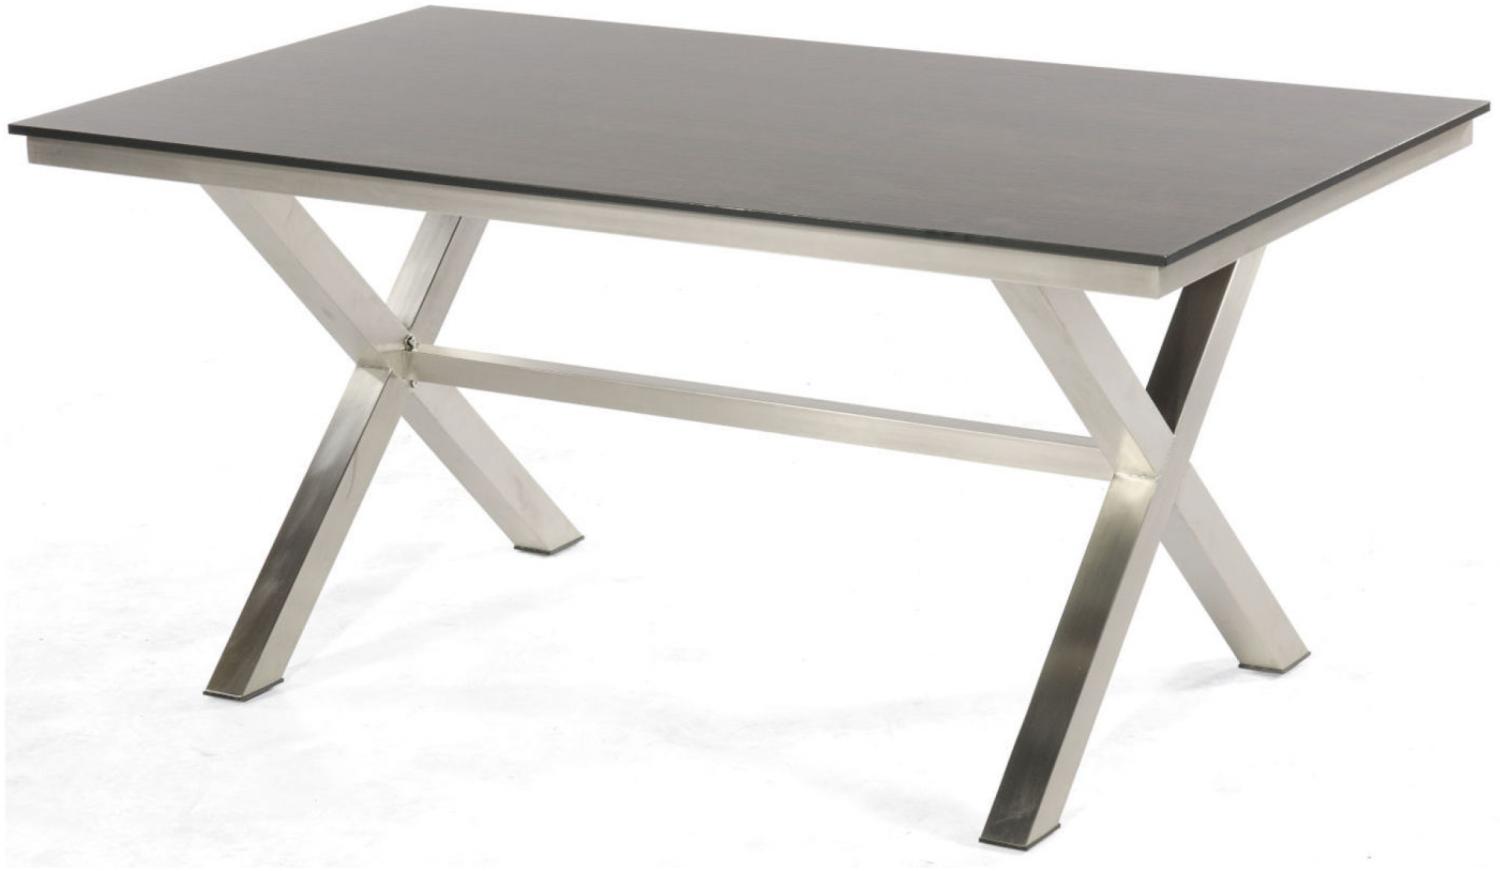 Sonnenpartner Gartentisch Base-Spectra 160x90 cm Edelstahl Tischsystem Tischplatte Compact HPL mali-wenge 80050508 Bild 1